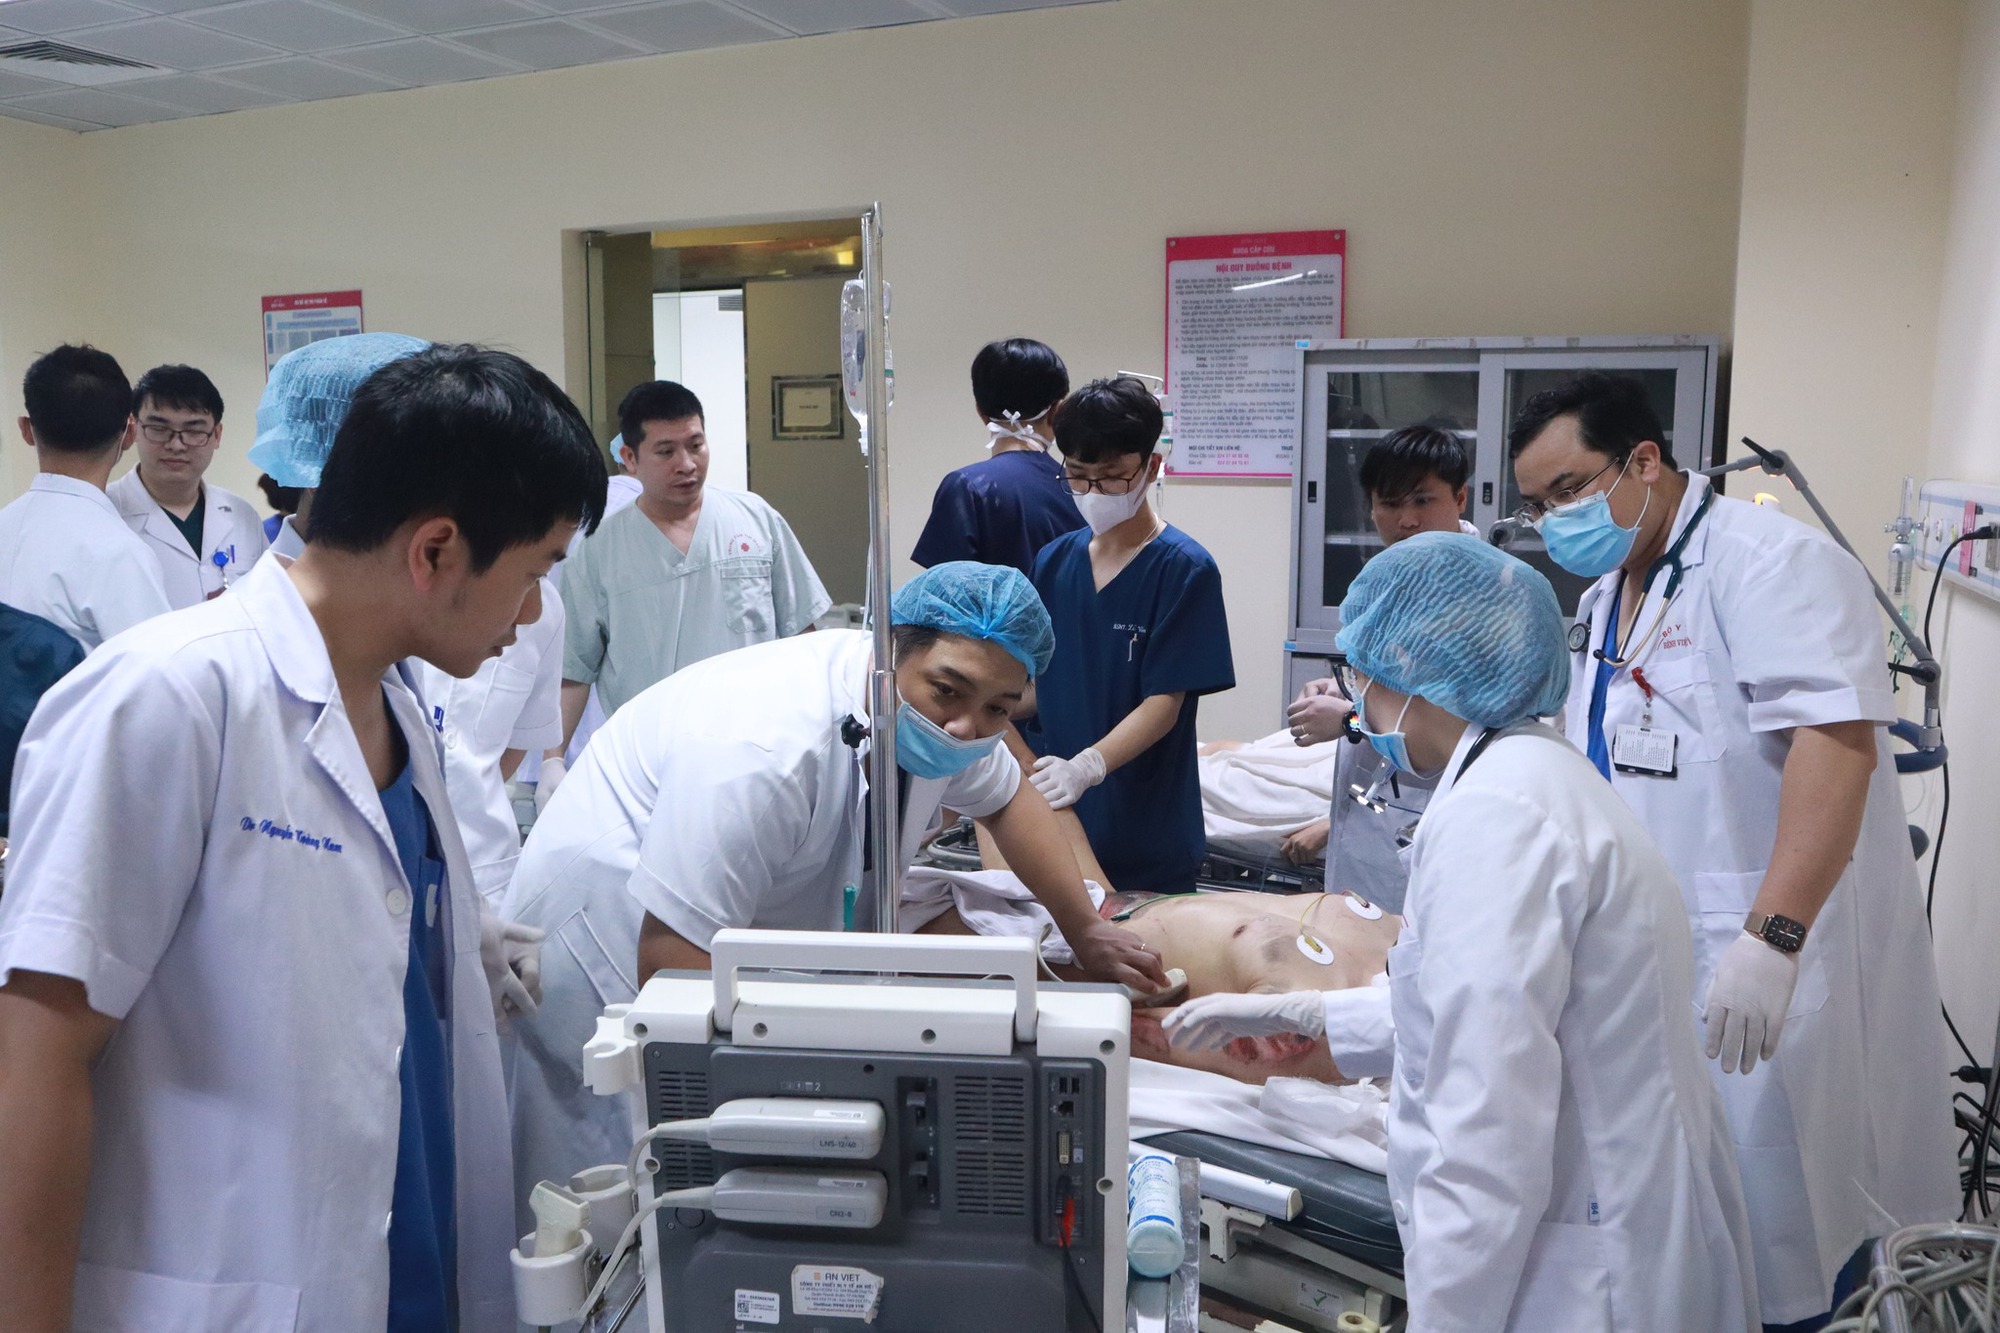 Chuyển BV Trung ương cho Hà Nội: Cân nhắc kỹ nếu không làm chậm, thậm chí đầy lùi phát triển ngành y tế - Ảnh 2.